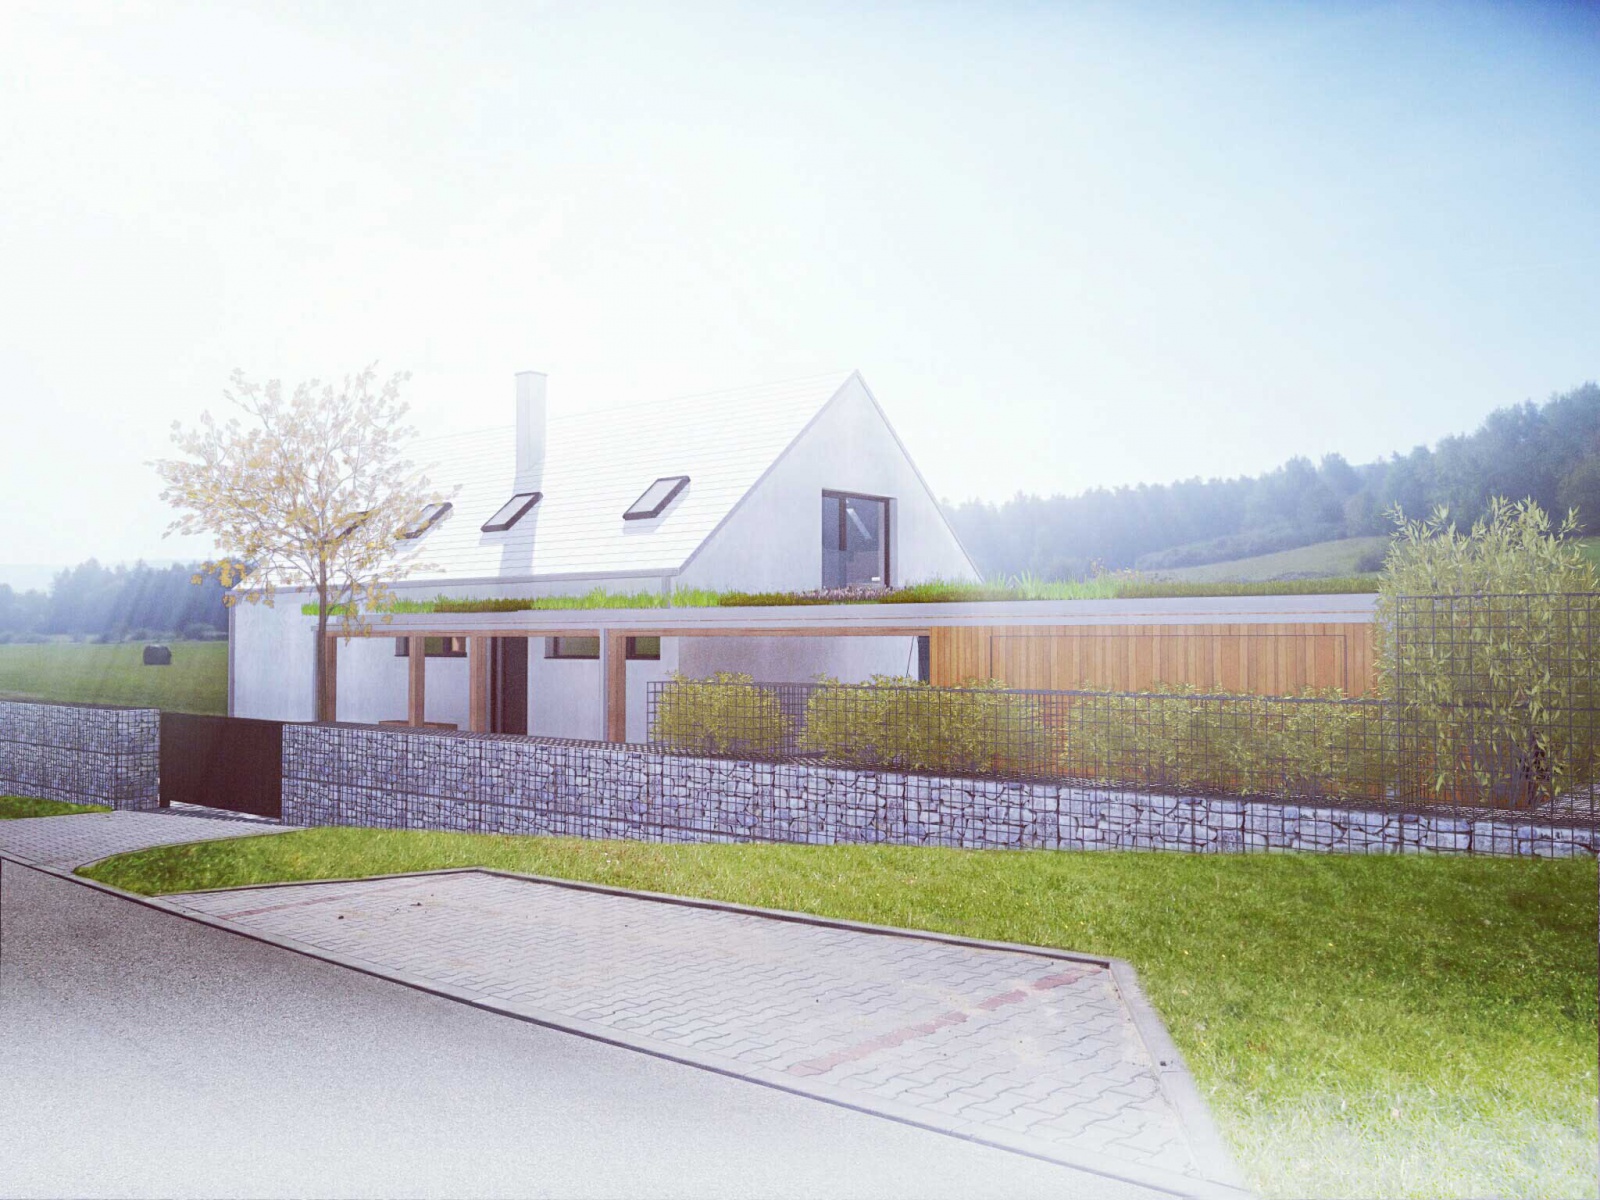 Moderní dům na venkově - pohled z ulice - 3K Architects s.r.o.